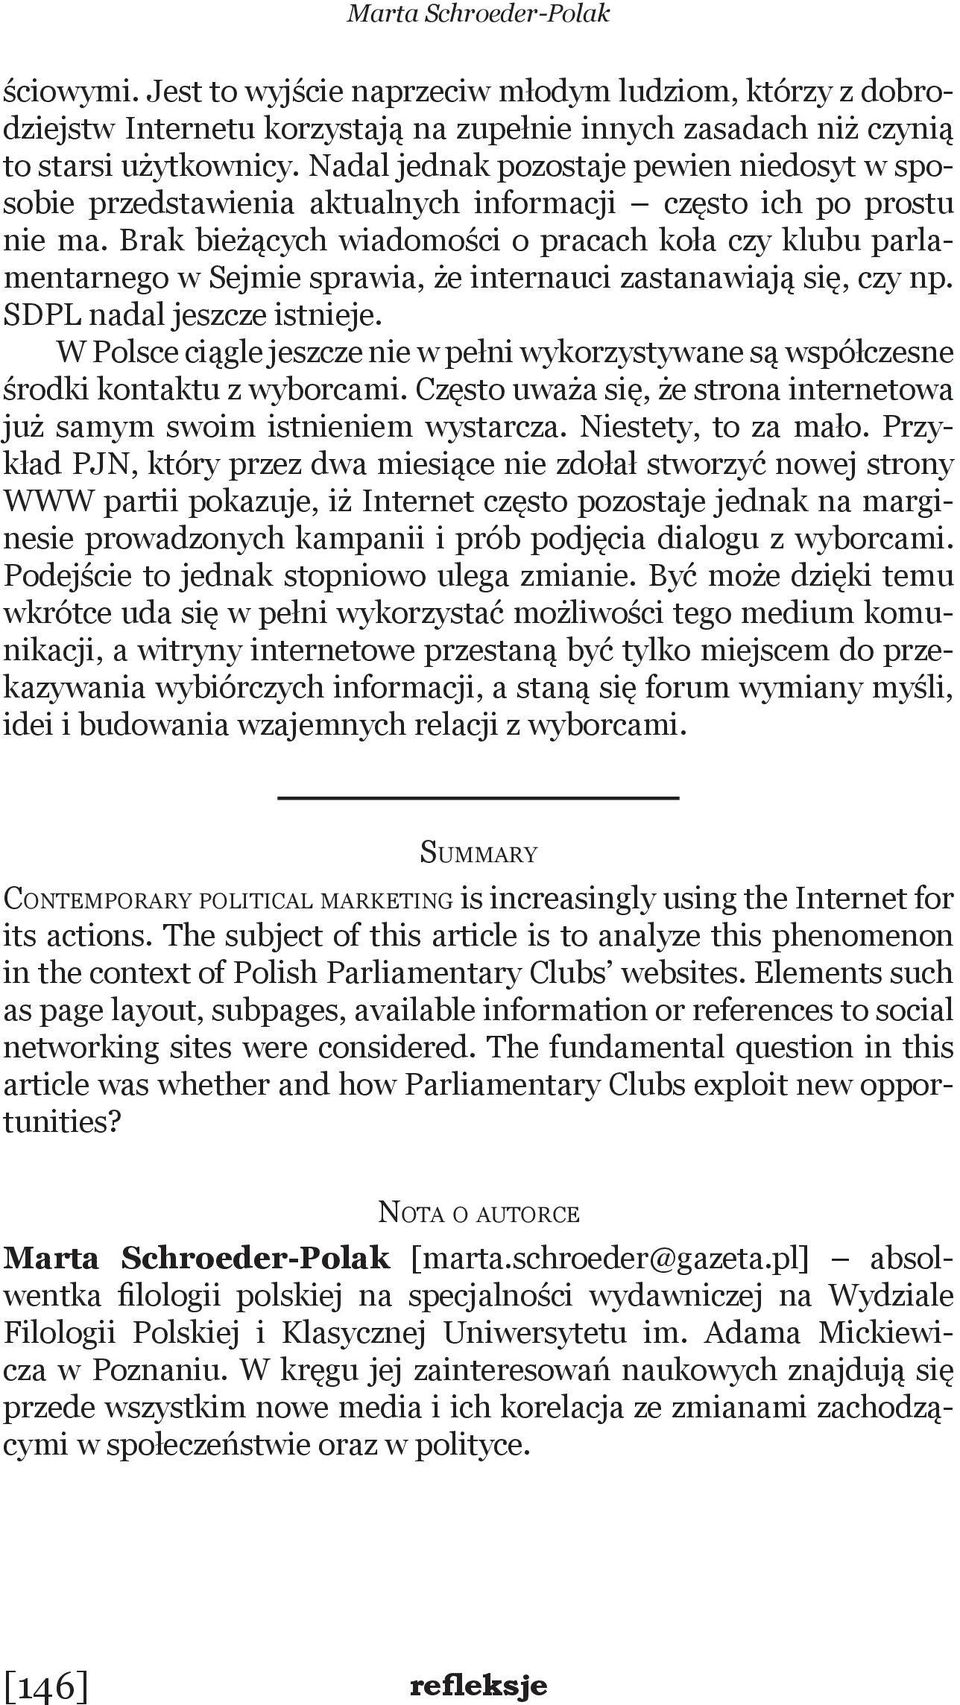 Brak bieżących wiadomości o pracach koła czy klubu parlamentarnego w Sejmie sprawia, że internauci zastanawiają się, czy np. SDPL nadal jeszcze istnieje.